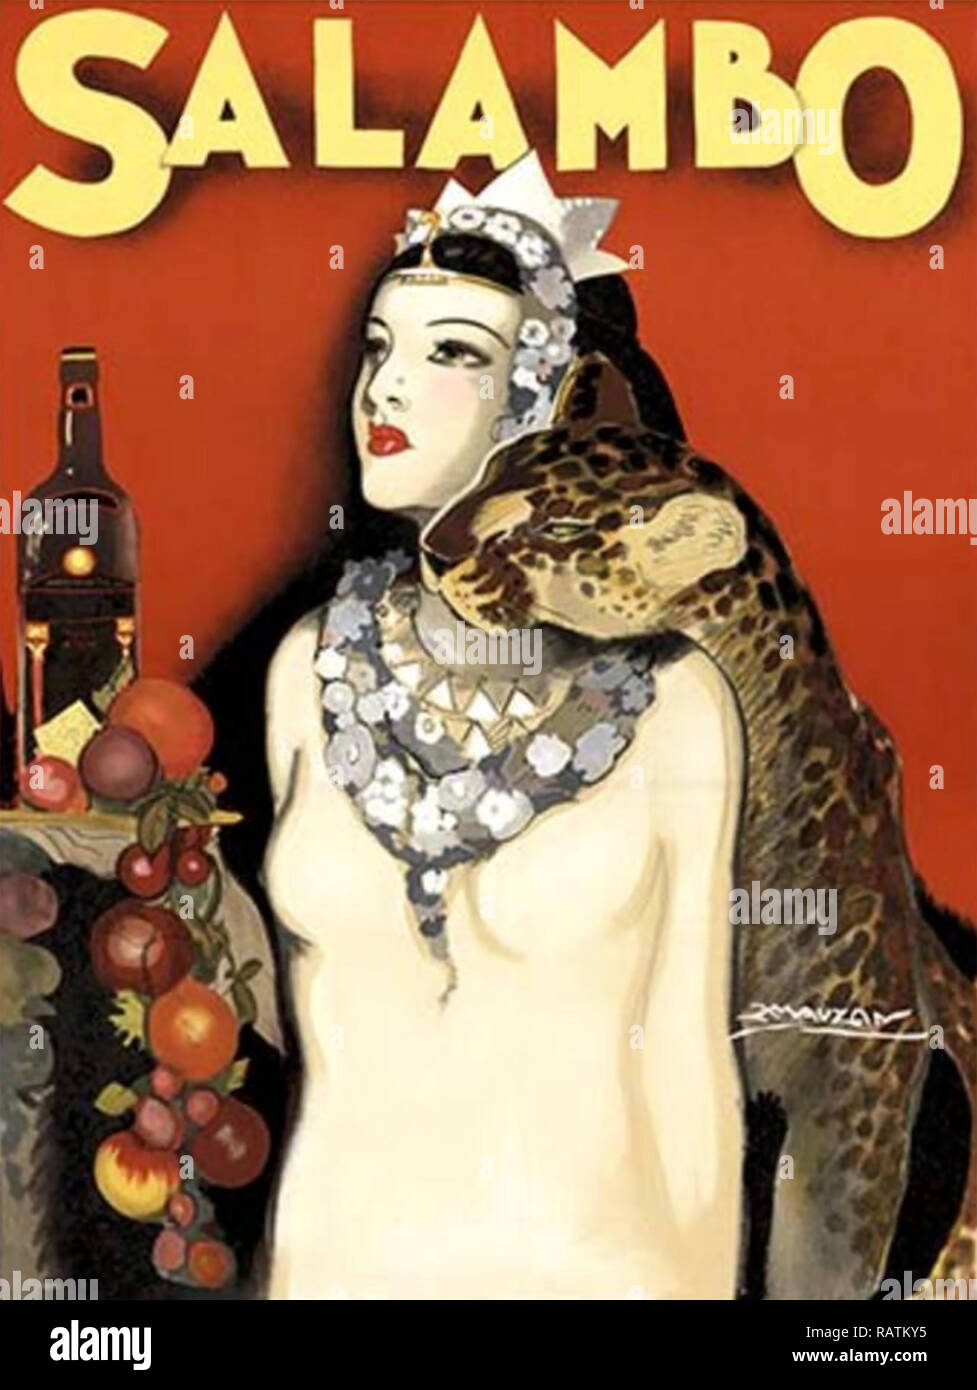 ACHILLE MAUZAN (1883-1952) artista italo-francese. Vino poster pubblicitario circa 1930 Foto Stock